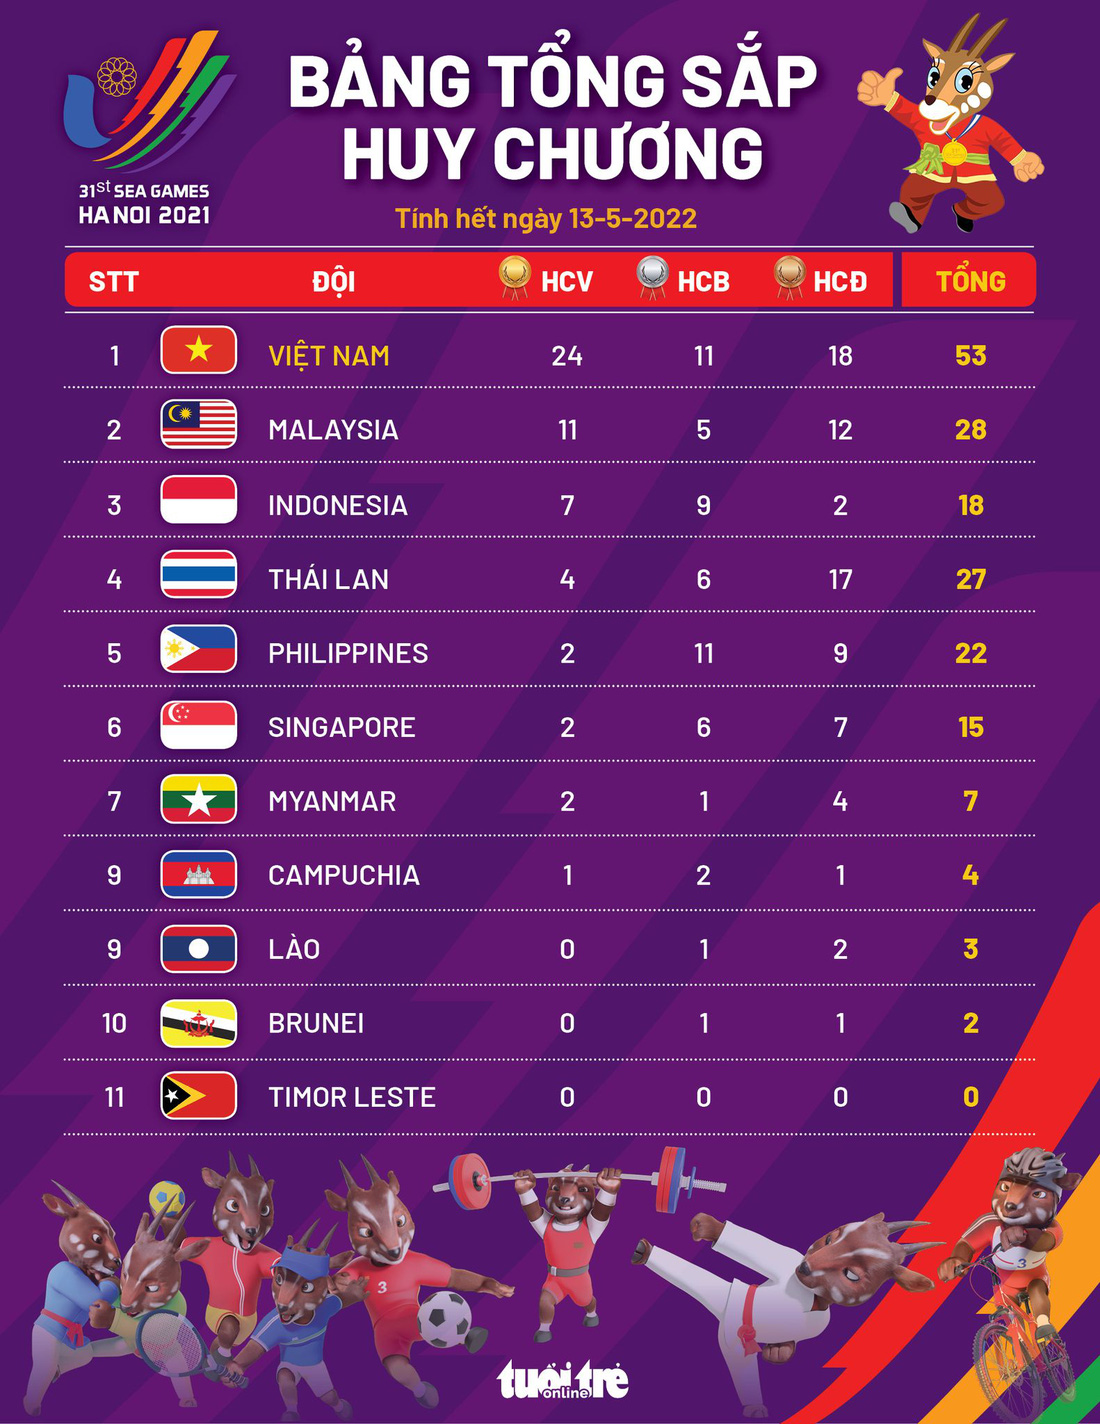 Bảng tổng sắp huy chương SEA Games 31: Việt Nam độc chiếm ngôi đầu với 24 HCV - Ảnh 1.